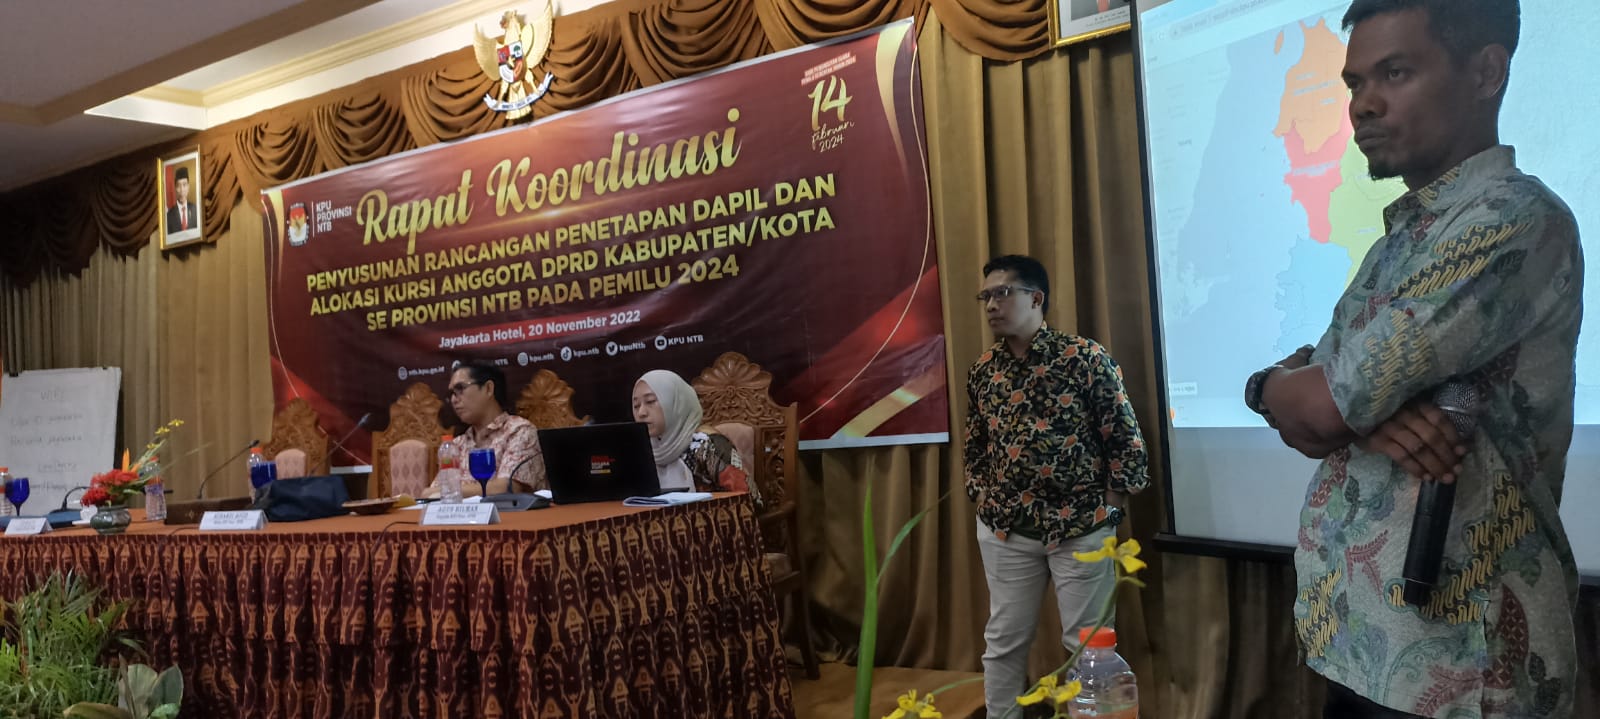 Rapat Koordinasi Rancangan dan Alokasi Kursi Pemilu Tahun 2024 di Mataram